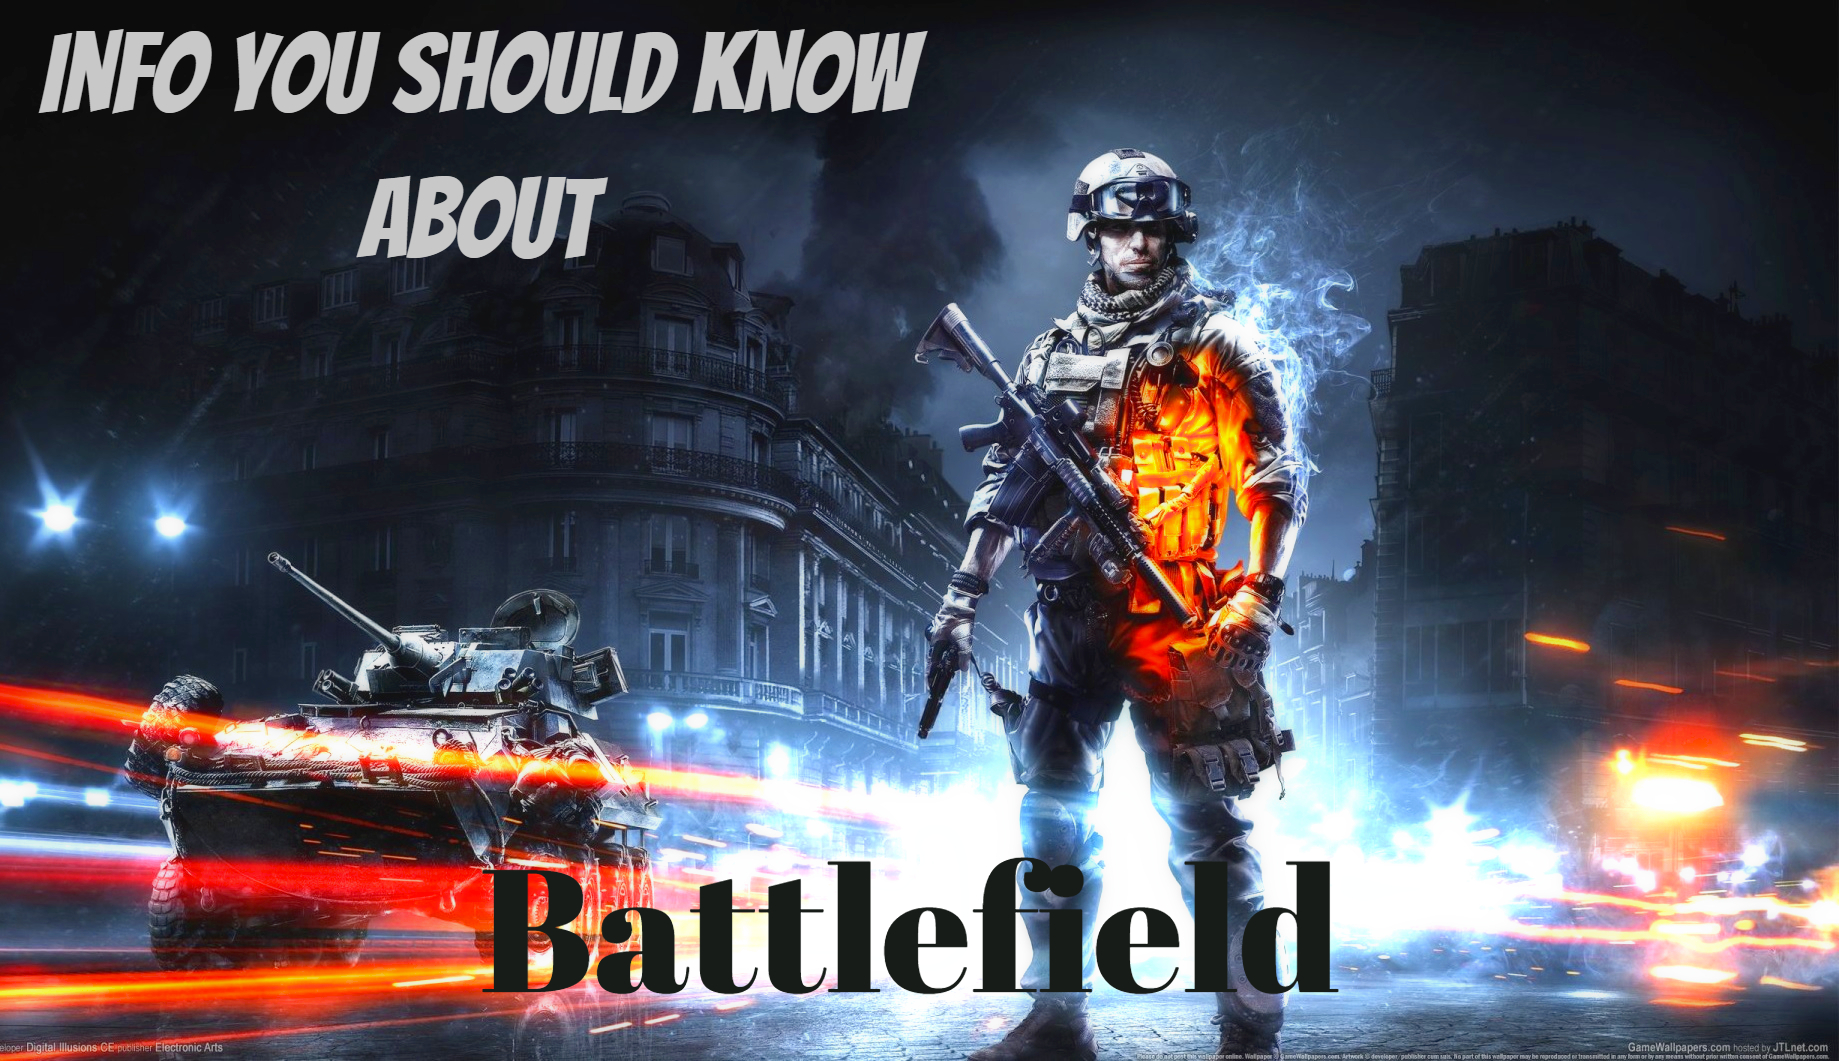 Battlefield Video Game Series Info Fan Should Know 